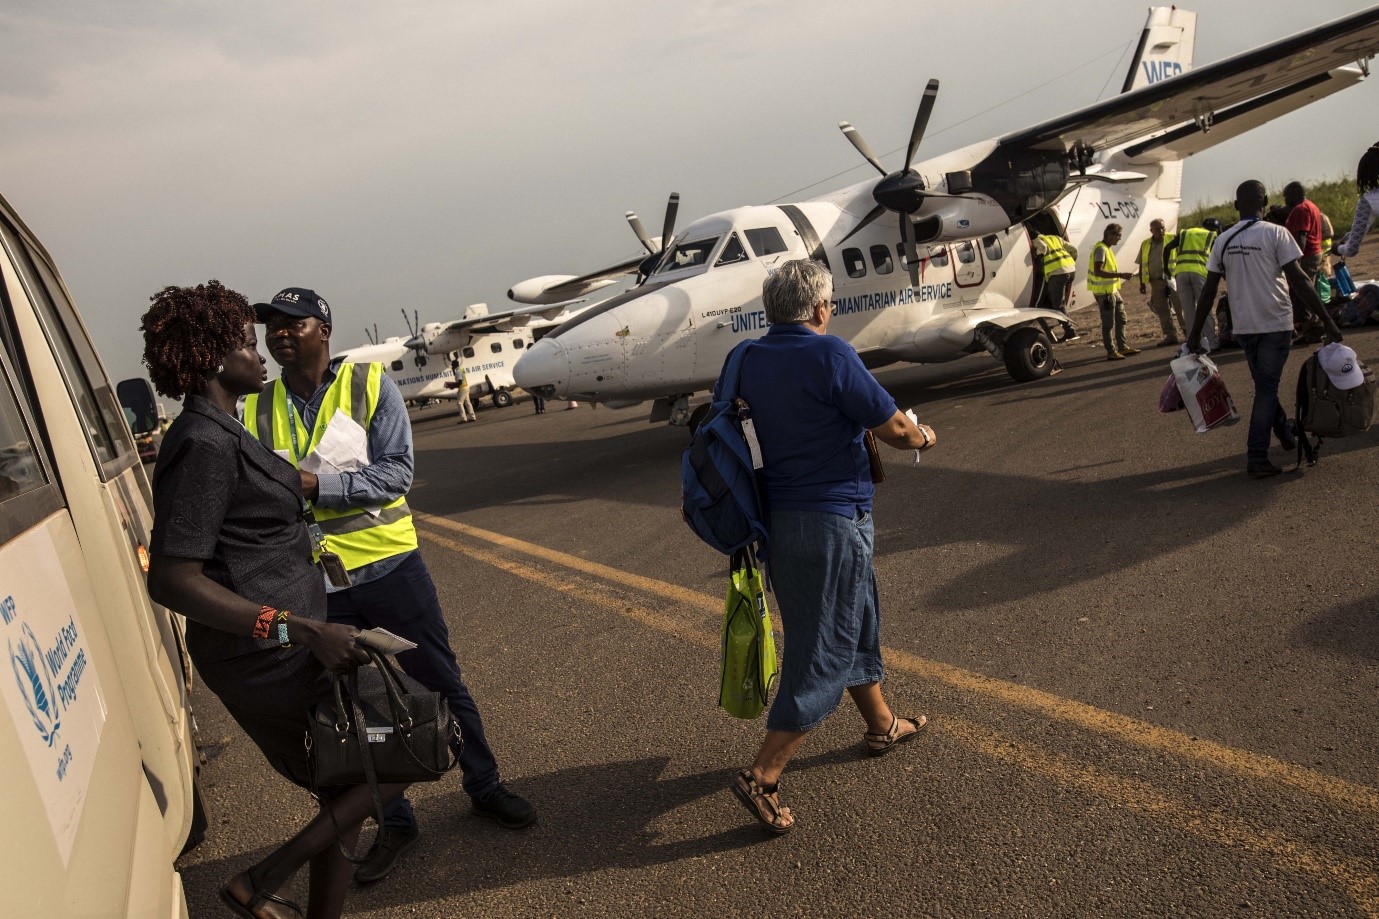 الركاب يصعدون على متن طائرة ET410 تابعة للخدمات الجوية الإنسانية للأمم المتحدة في مطار جوبا الدولي بجنوب السودان. الصورة: برنامج الأغذية العالمي/جابريلا فيفاكوا 